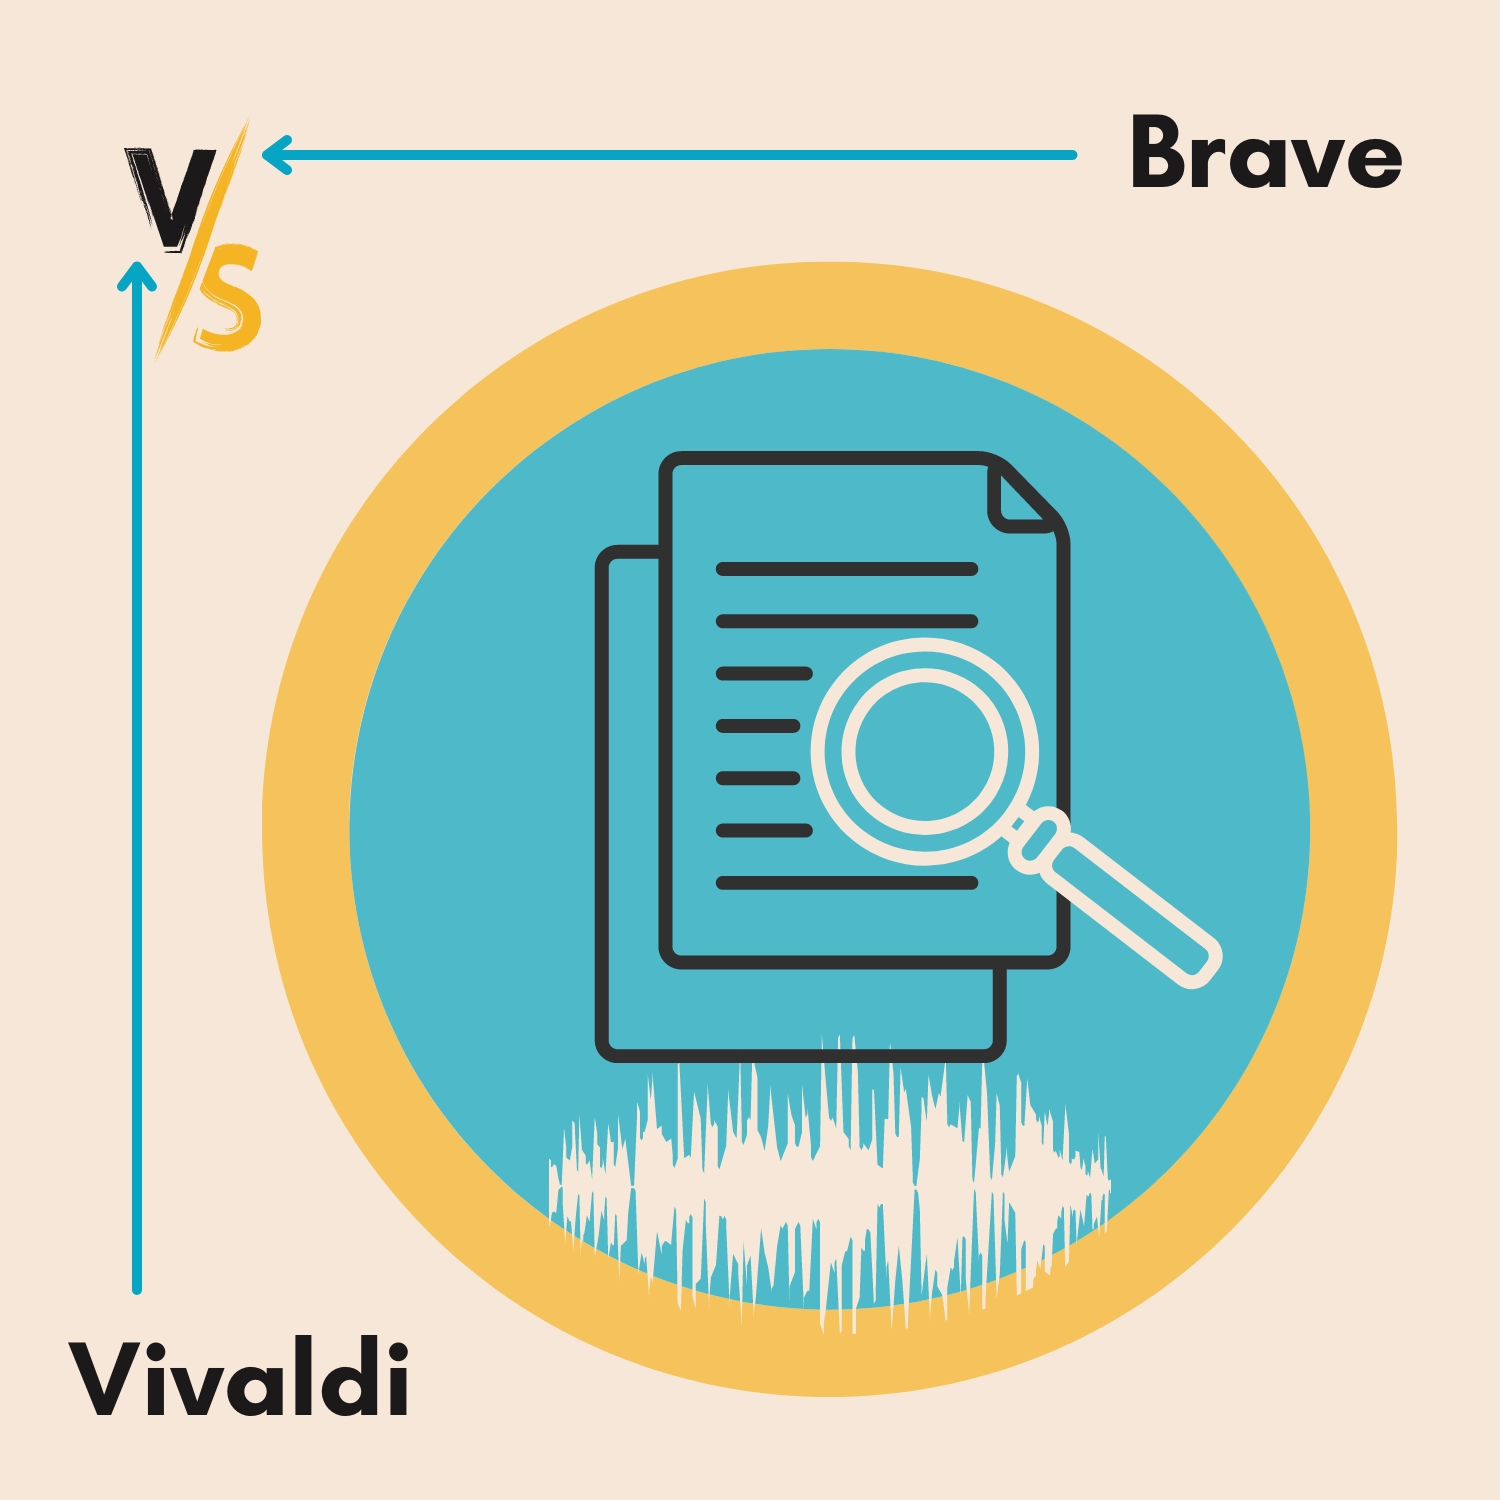 Vivaldi vs Brave